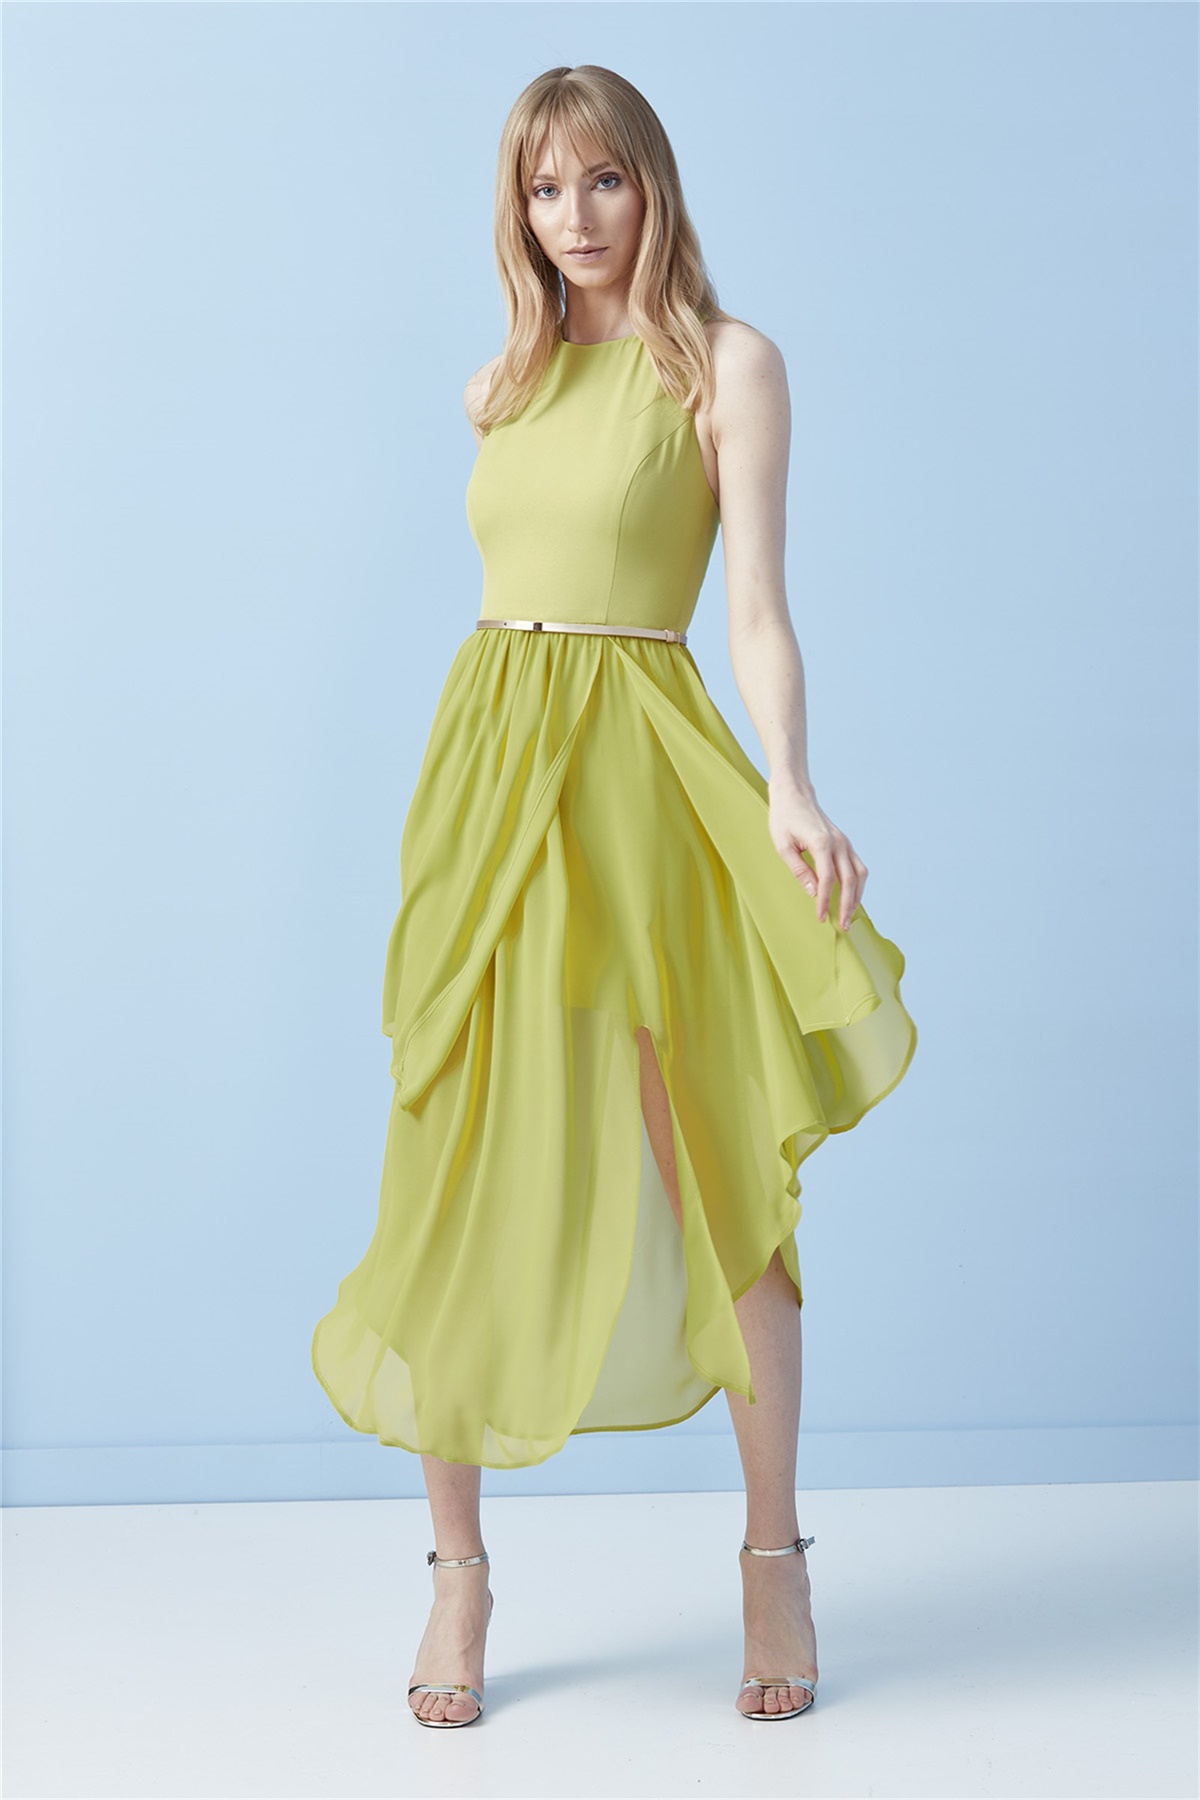 Elbise U Yaka, Arka Sırt Çapraz Askı Detaylı, Alt Beden Asimetrik Şifon  Kombinli Fıstık Yeşili